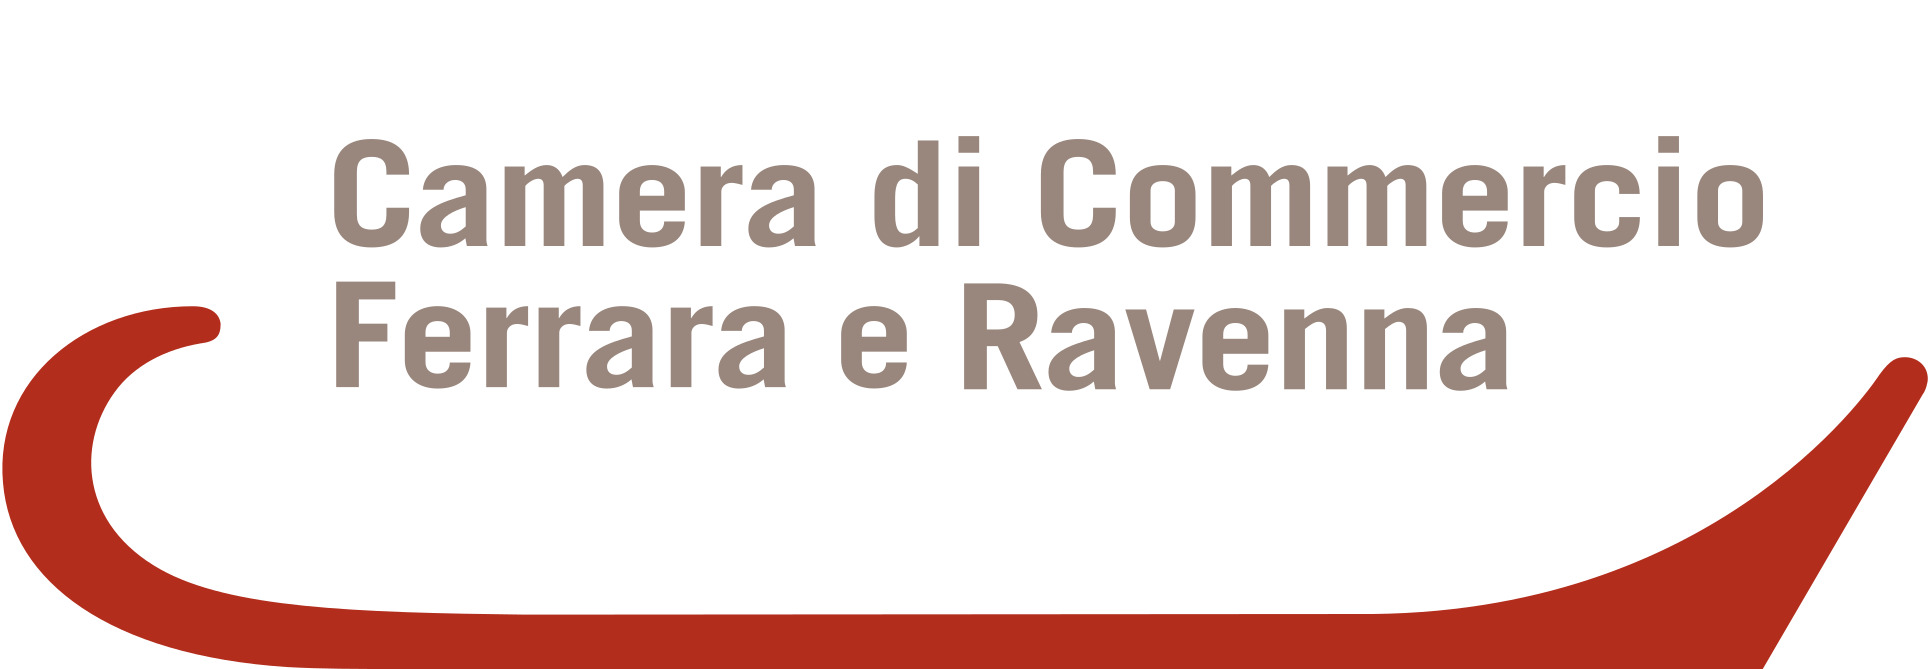 Camera di Commercio Ferrara Ravenna